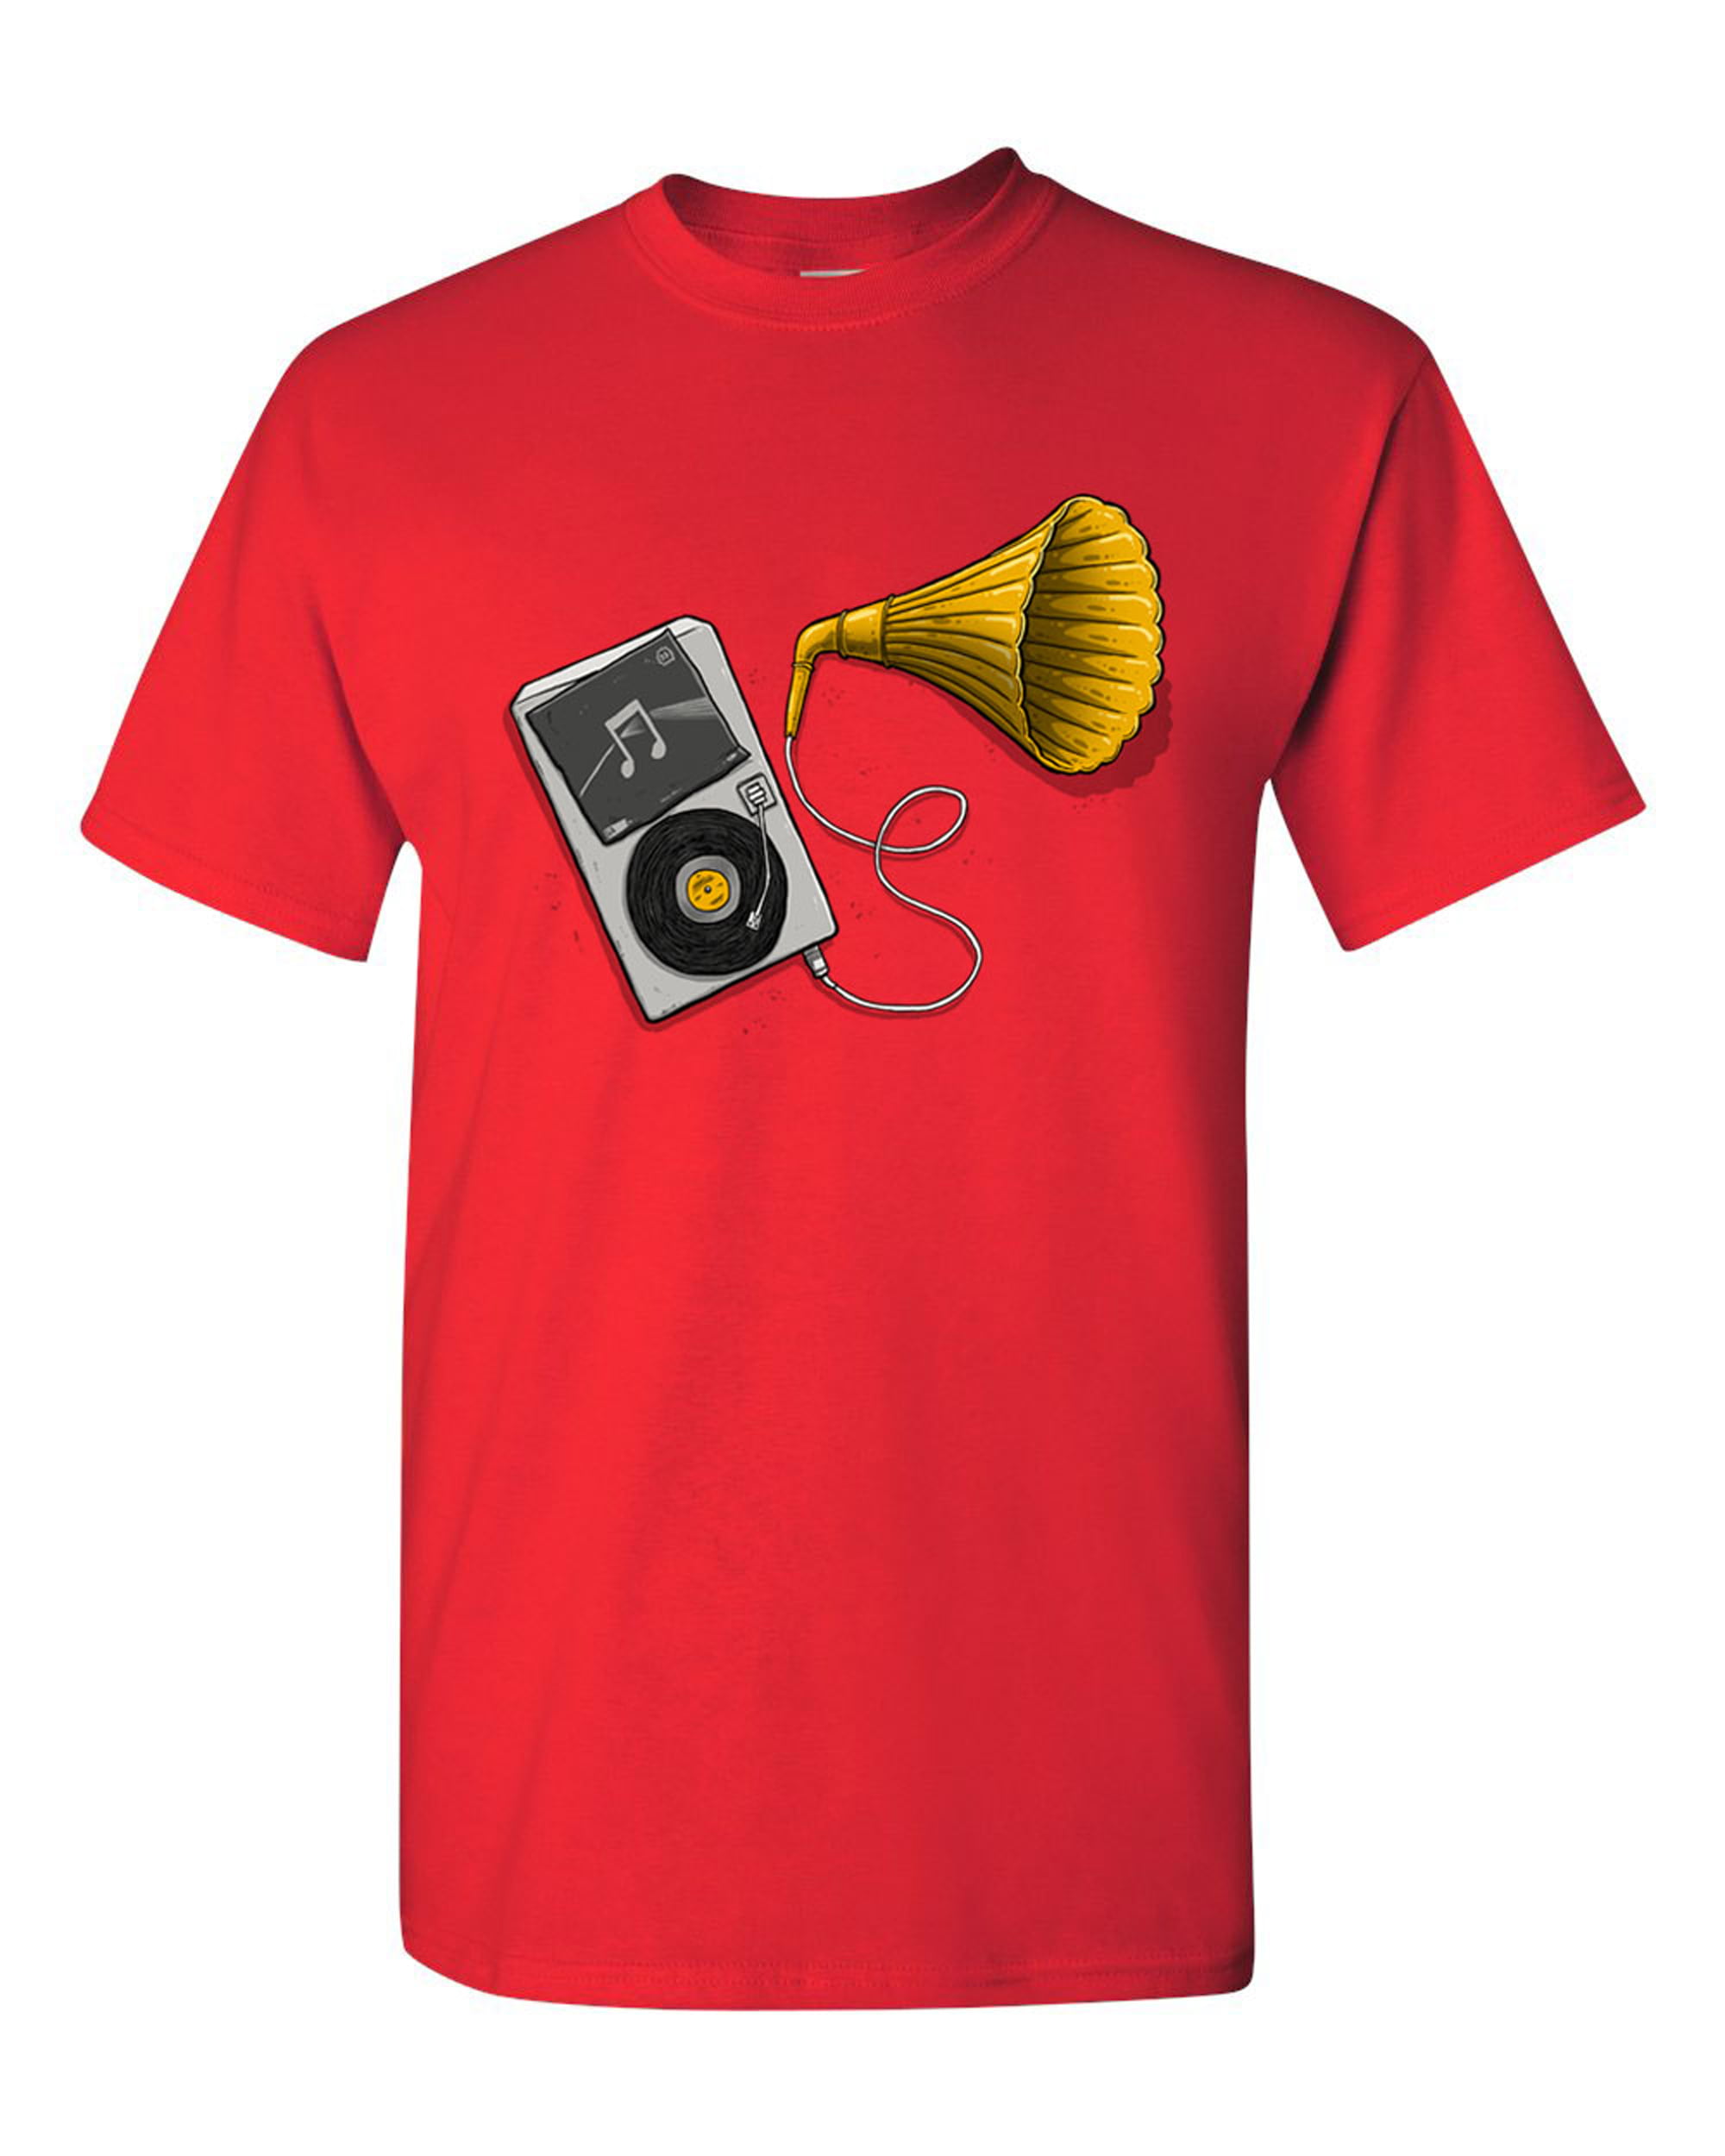 Handpan Hang T-Shirt Musique Sound Snail' T-shirt Enfant